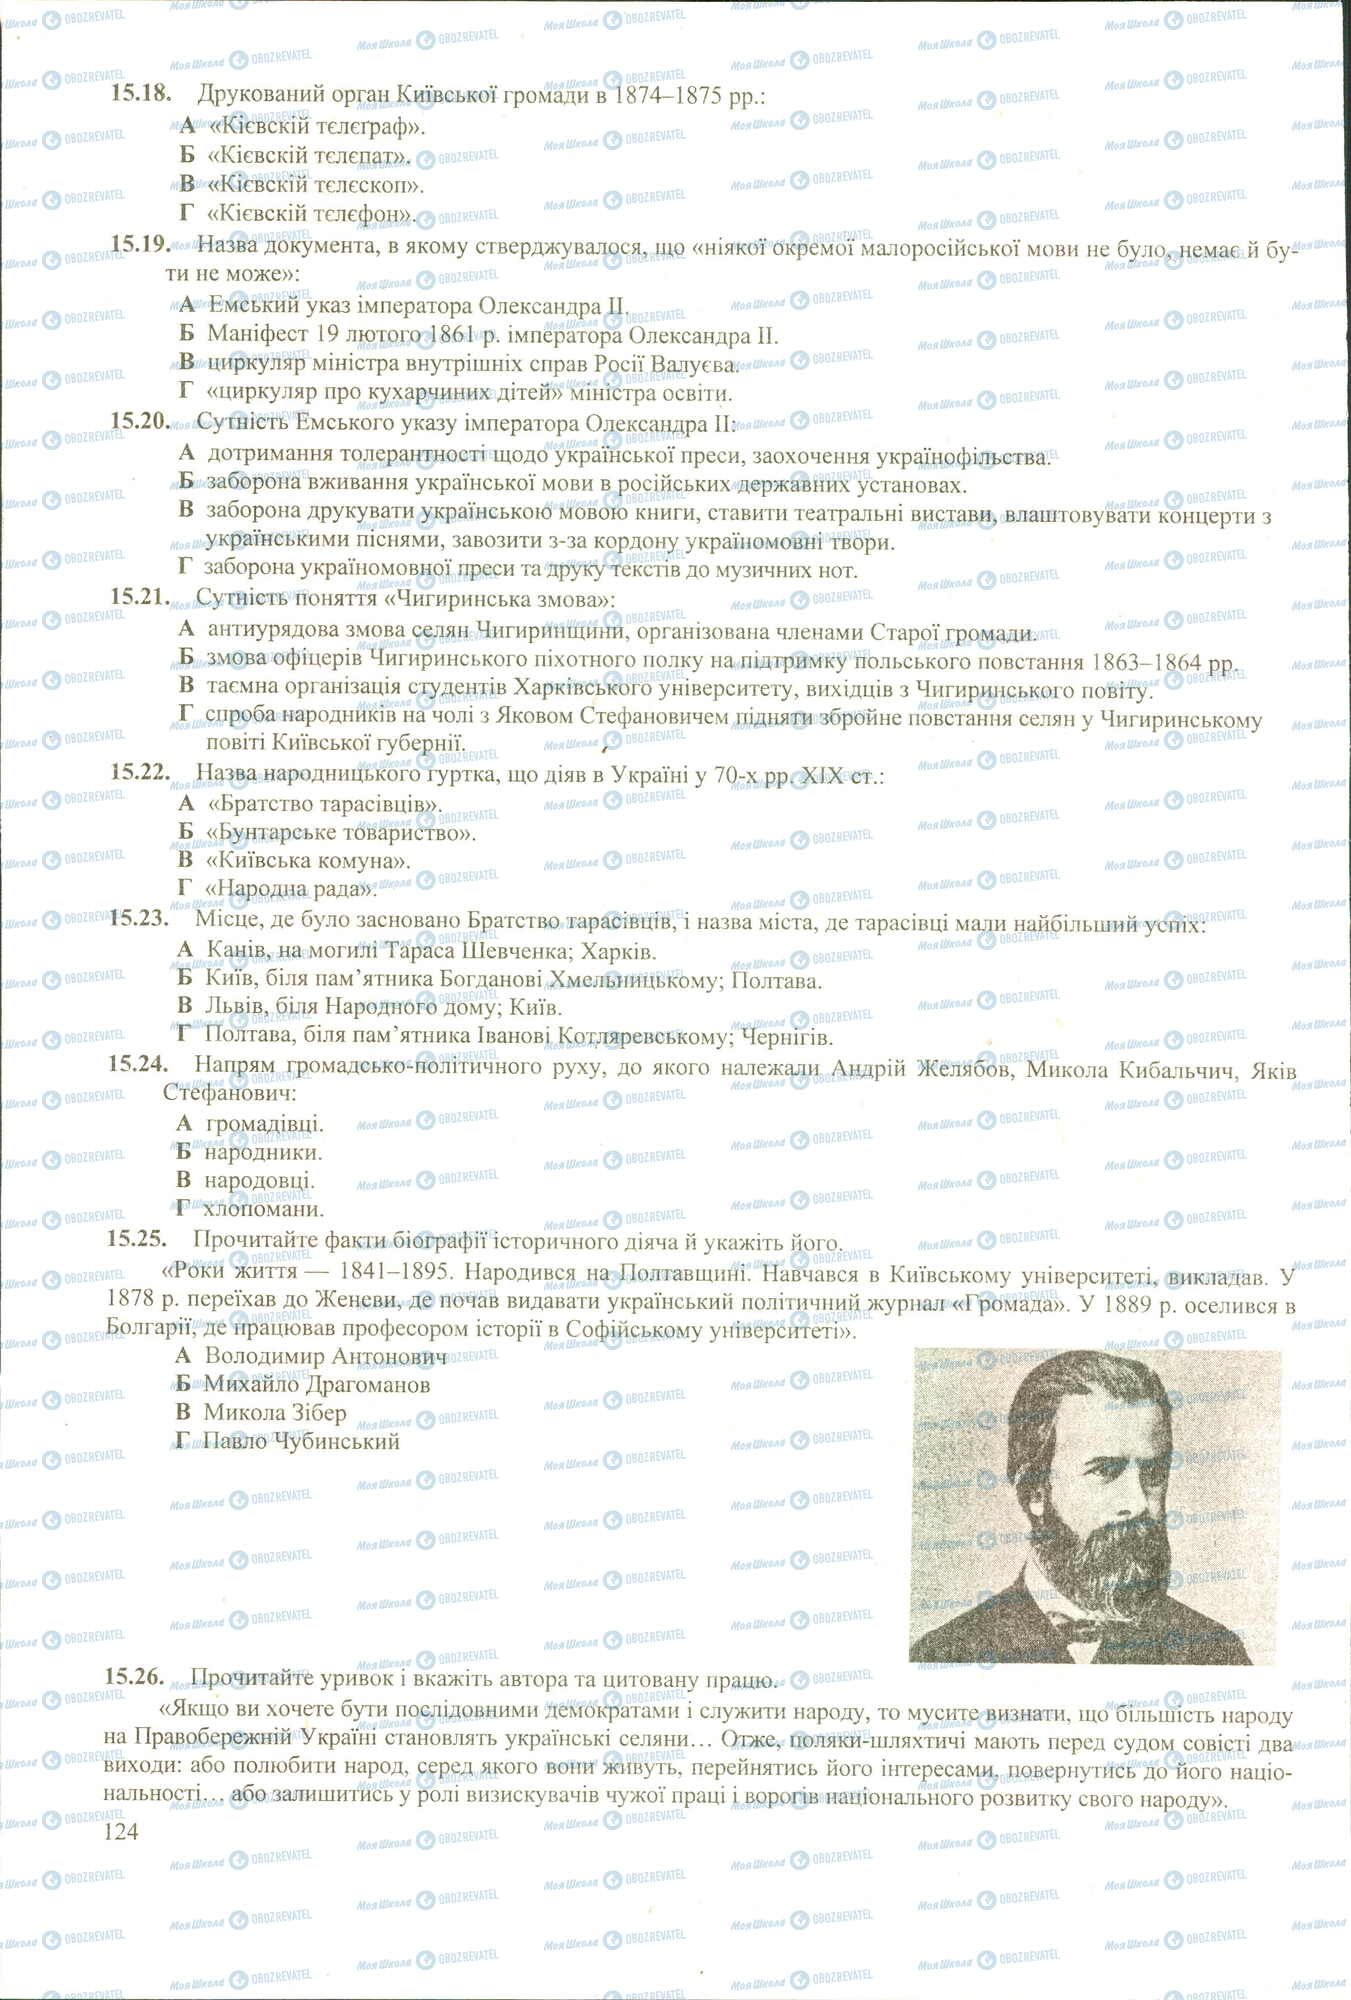 ЗНО История Украины 11 класс страница 18-26